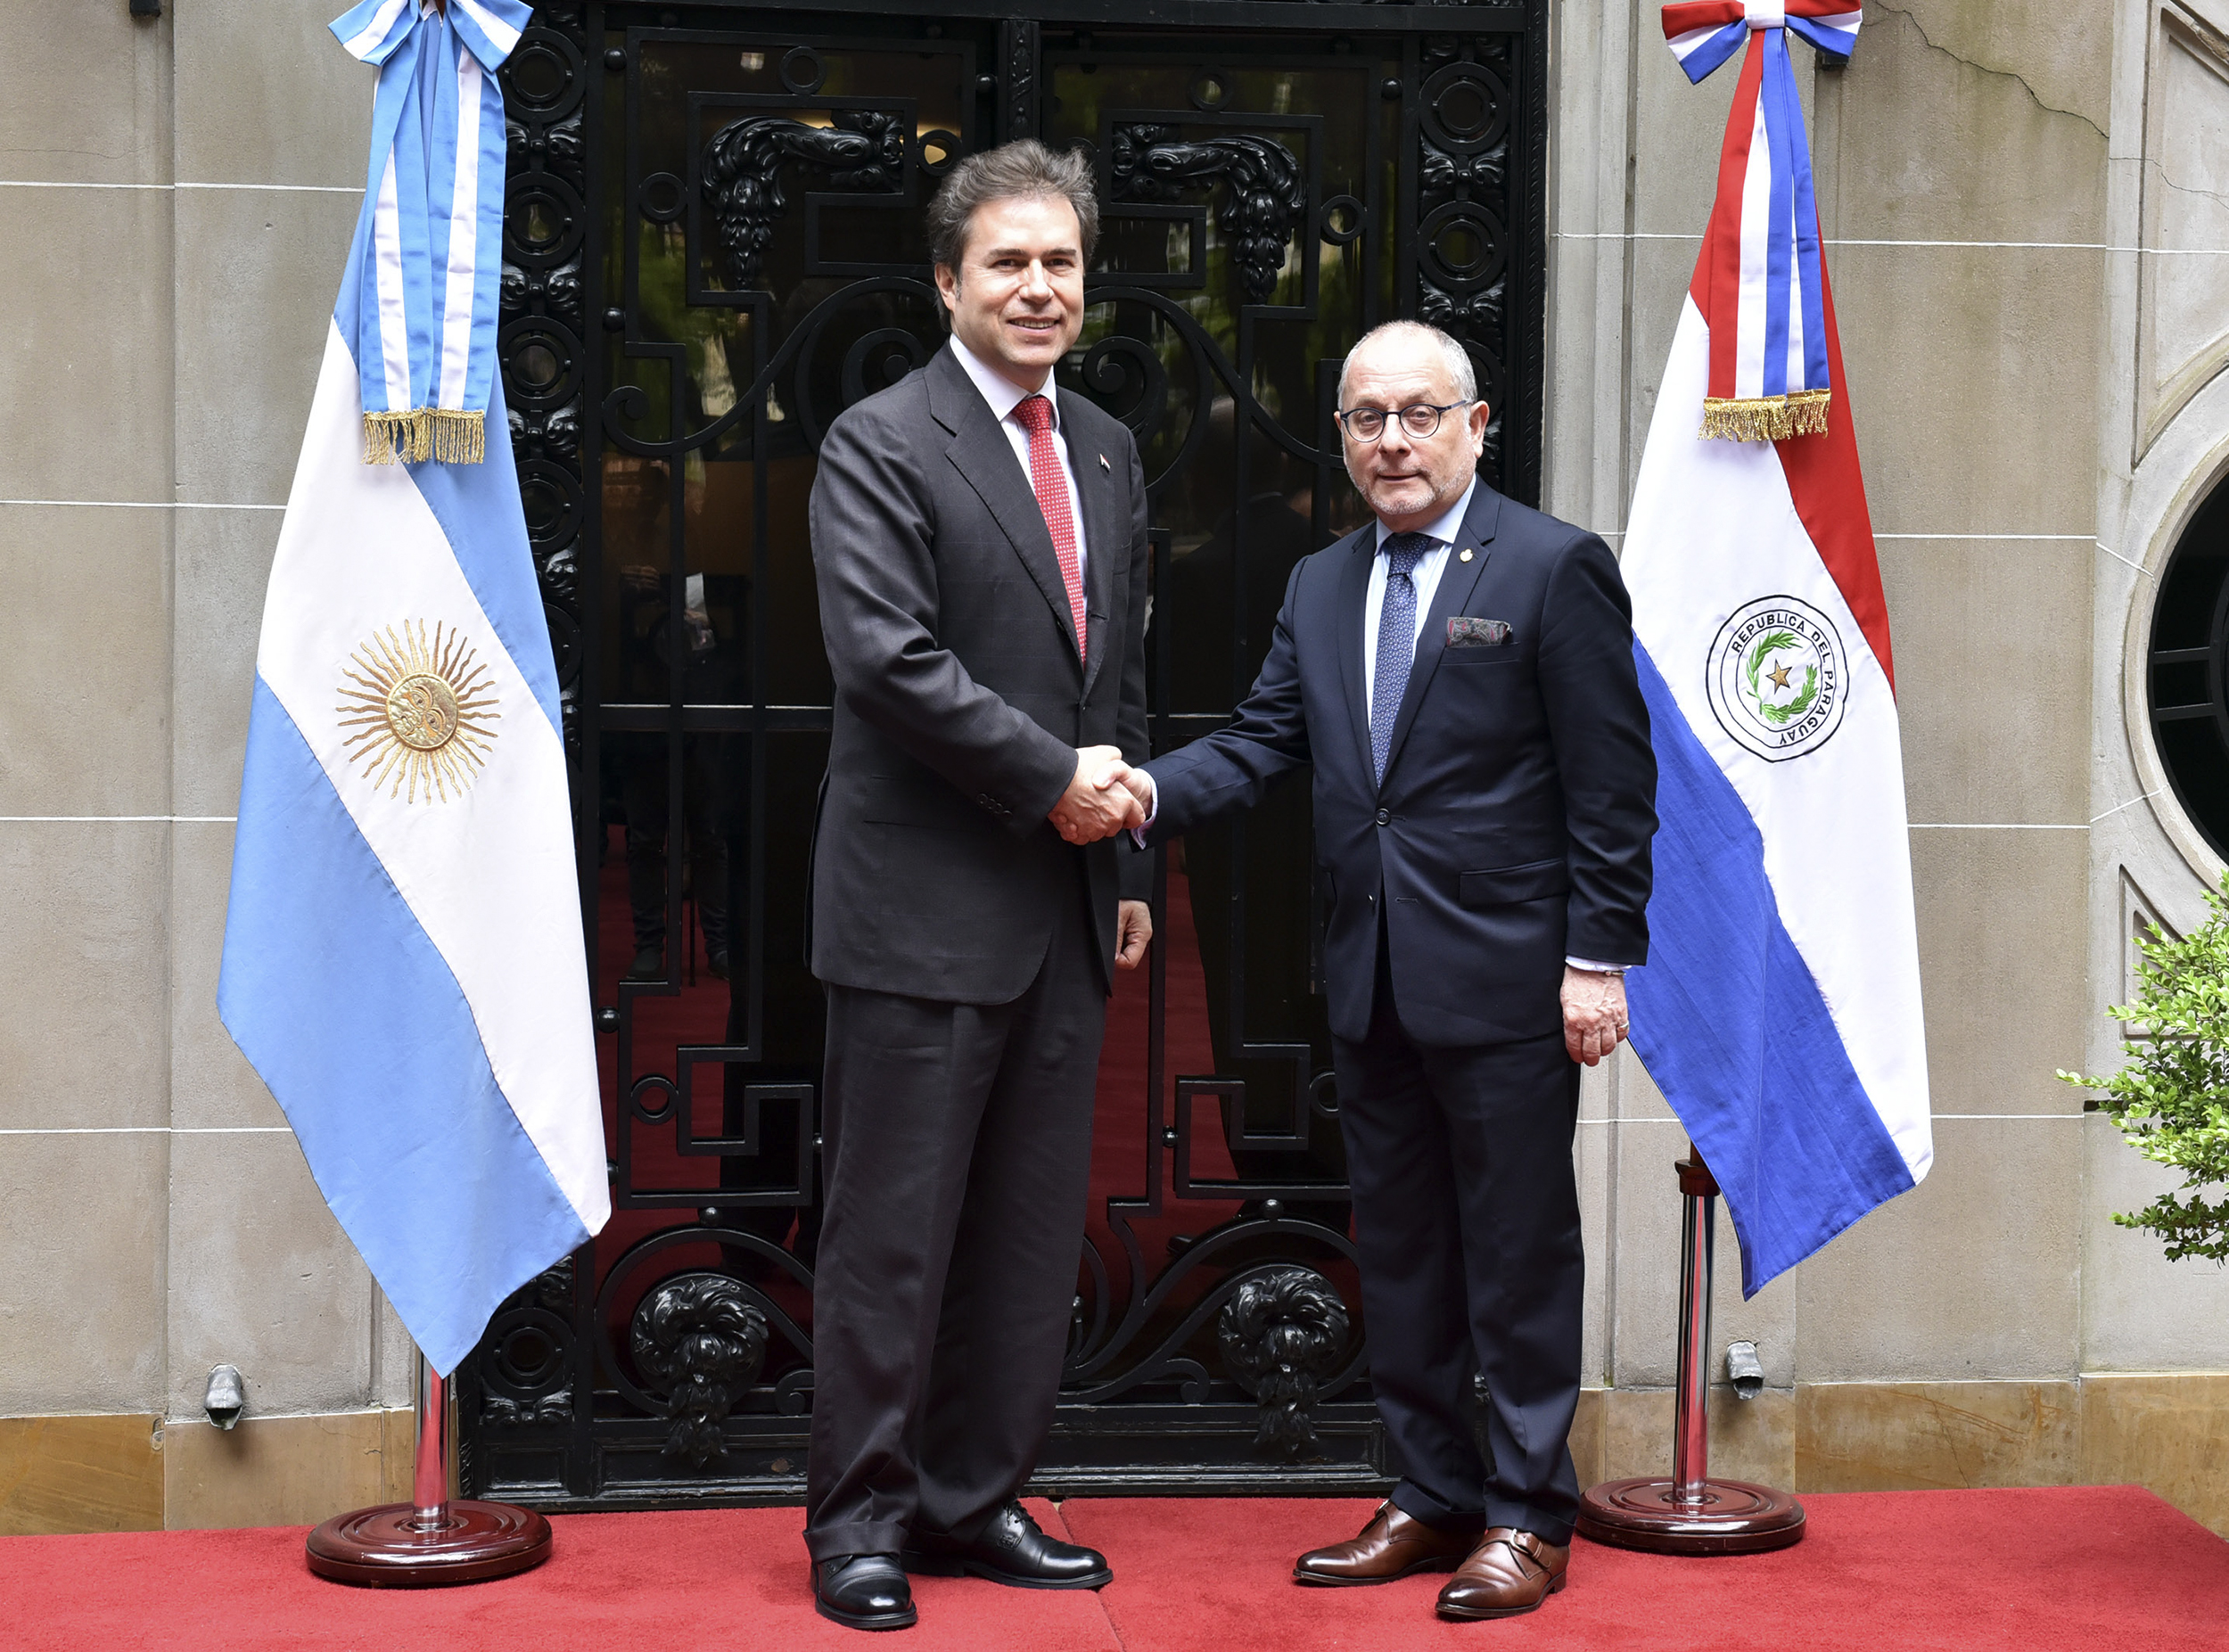 El Canciller Nacional, Don Luis Alberto Castiglioni, realizó en la fecha su primera Visita Oficial a la República Argentina invitado por el Ministro de Relaciones Exteriores y Culto de dicho país, el Embajador Jorge Faurie